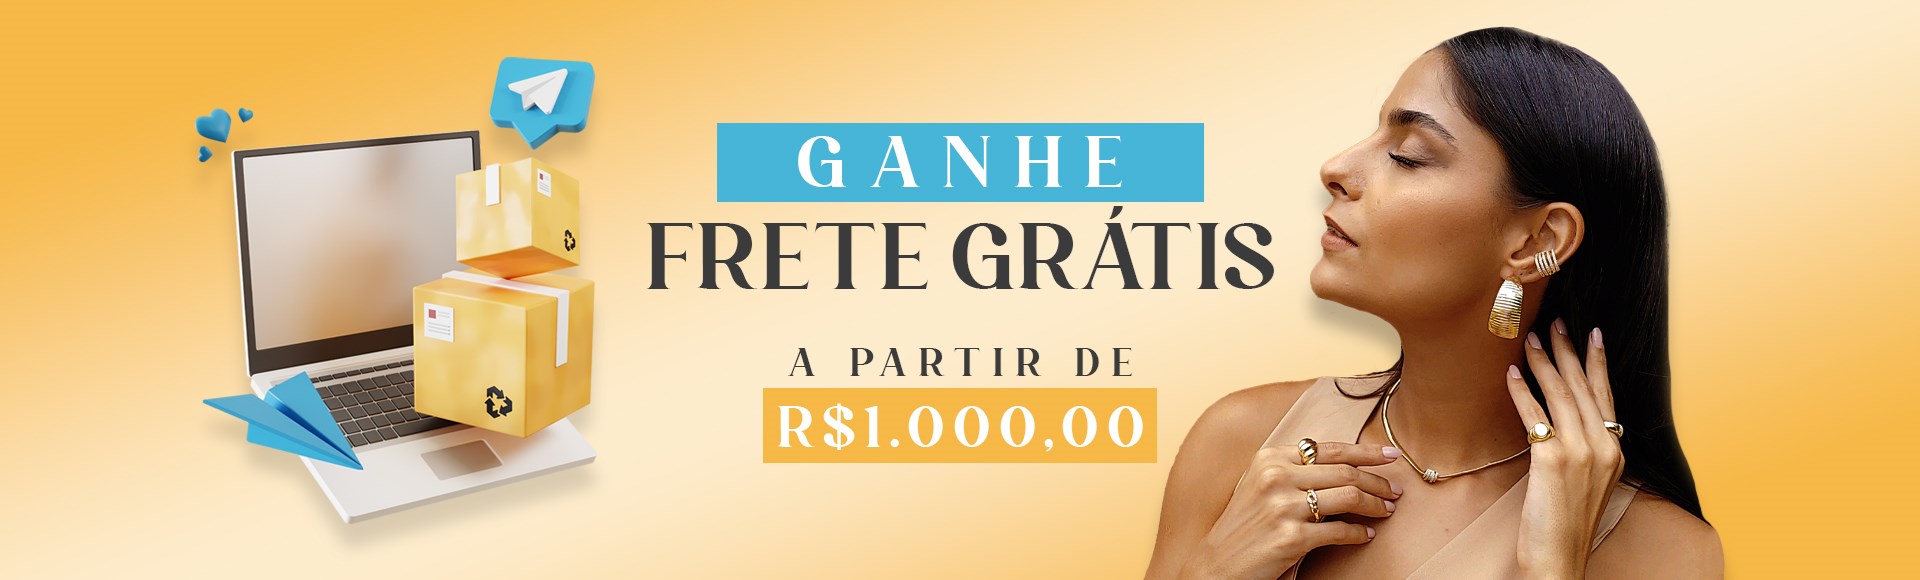 FRETE GRÁTIS R$ 800,00